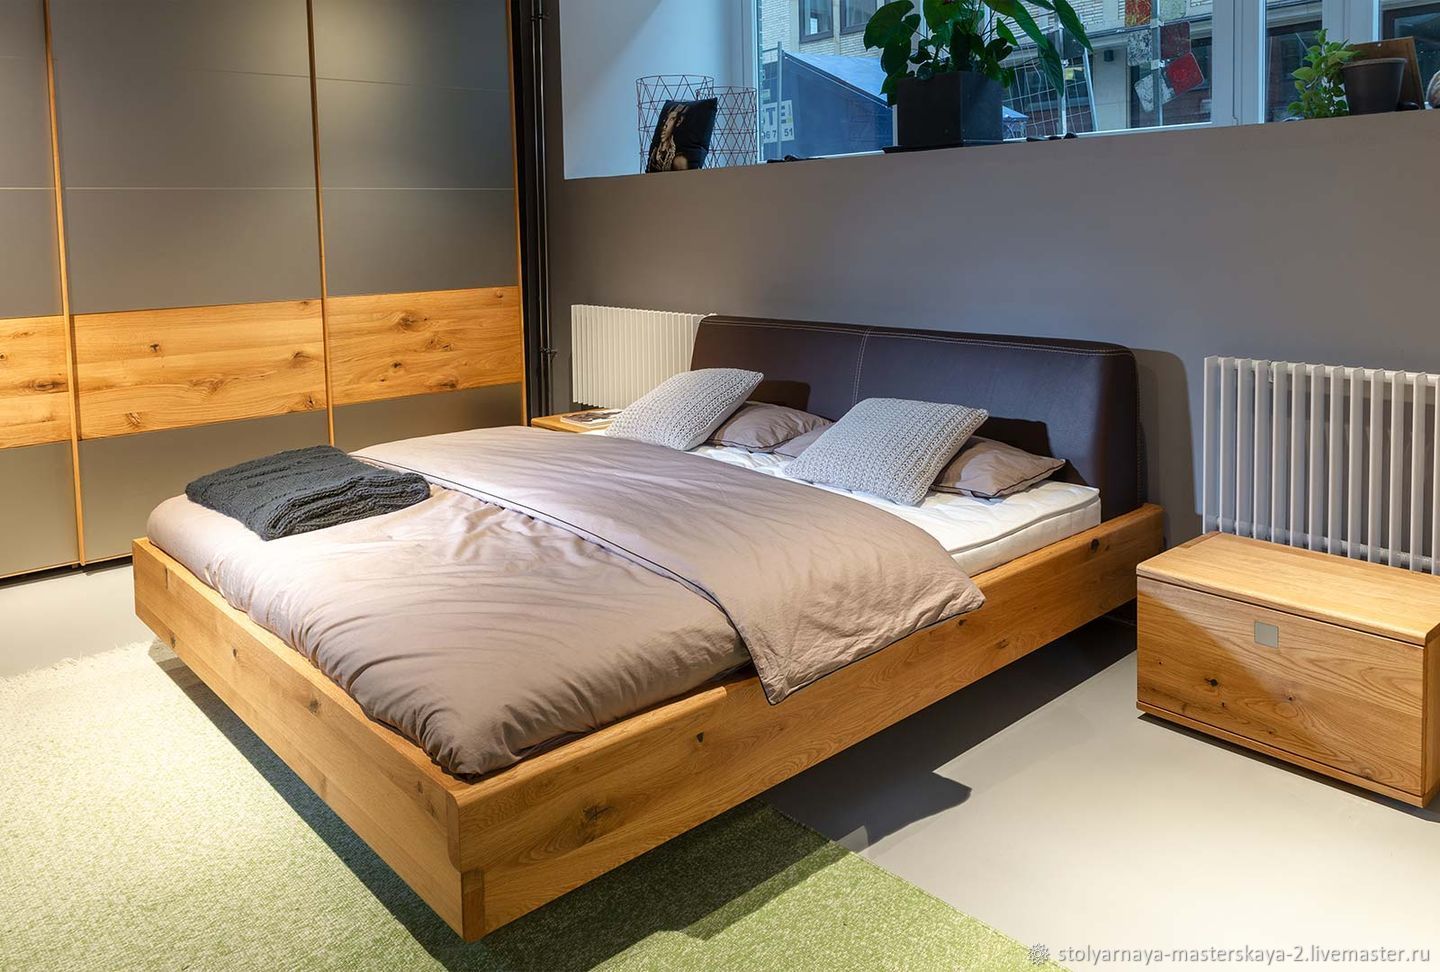 Кровать из массива дерева картинки